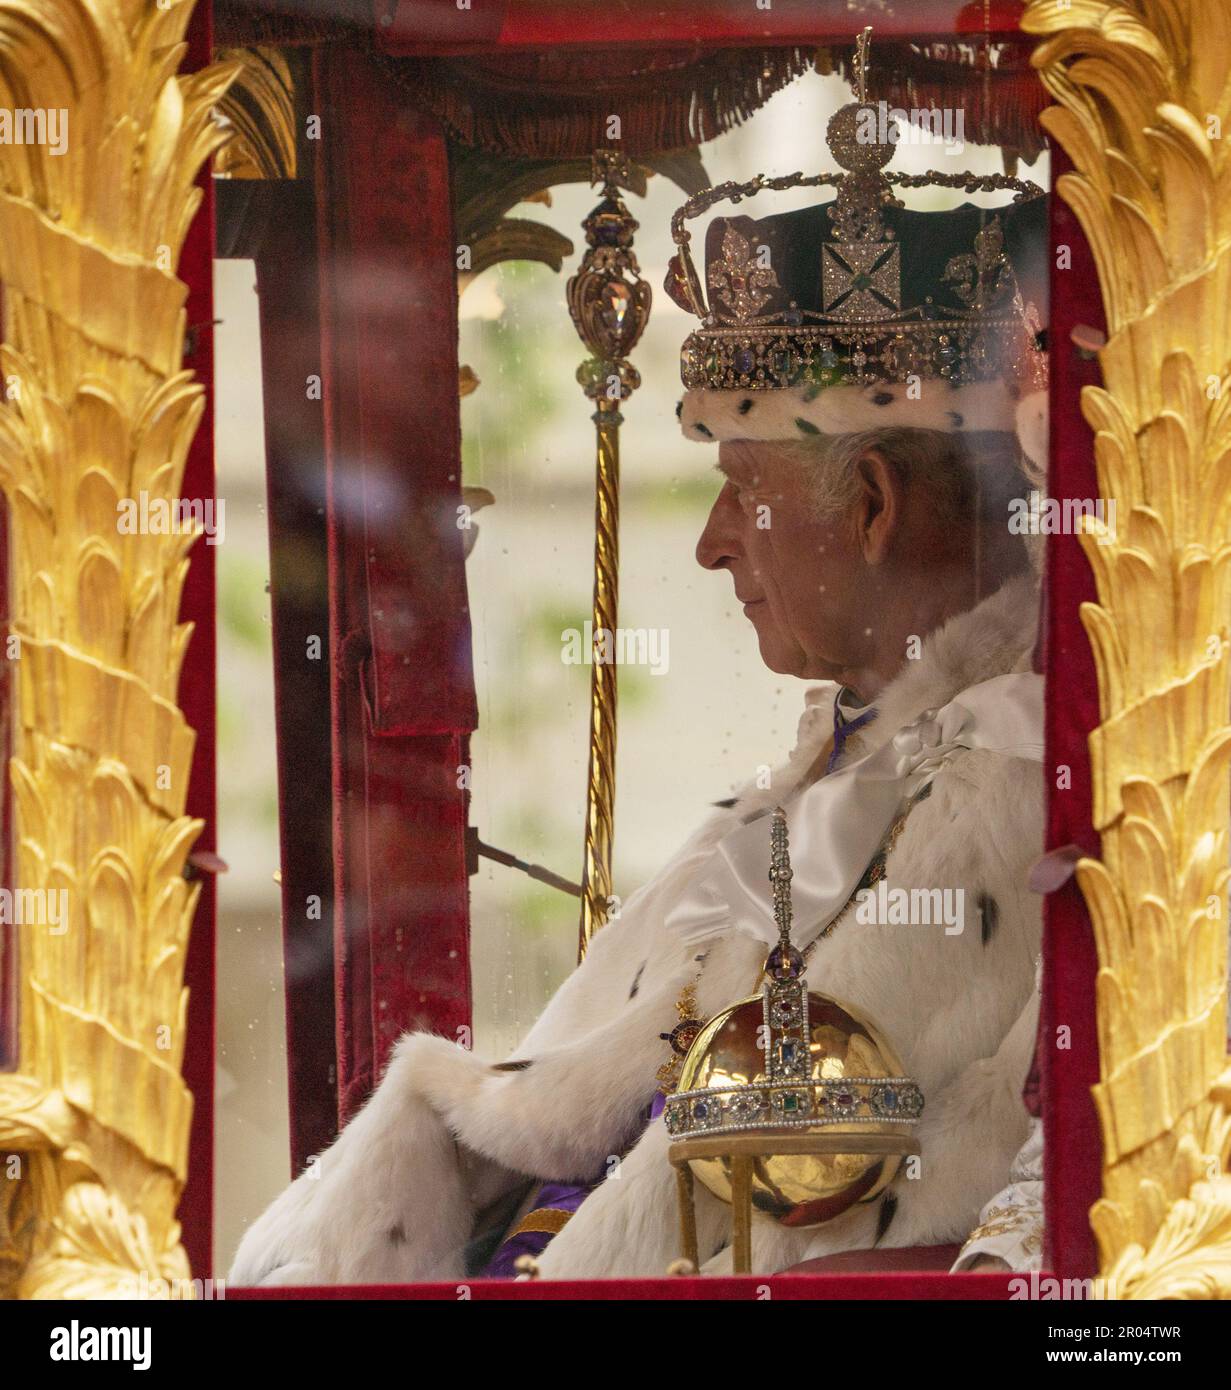 König Karl III. Und Königin Camilla reisen in der Gold State Coach, die 1760 erbaut wurde und bei jeder Krönung seit Wilhelm IV. Im Jahr 1831sets verwendet wurde, von Westminster Abbey auf dem Weg zum Buckingham Palace während der Krönung von König Karl III. Und Königin Camilla am Samstag, den 6. Mai, 2023 in London, England. Foto: British Ministry of Defence/UPI Credit: UPI/Alamy Live News Stockfoto